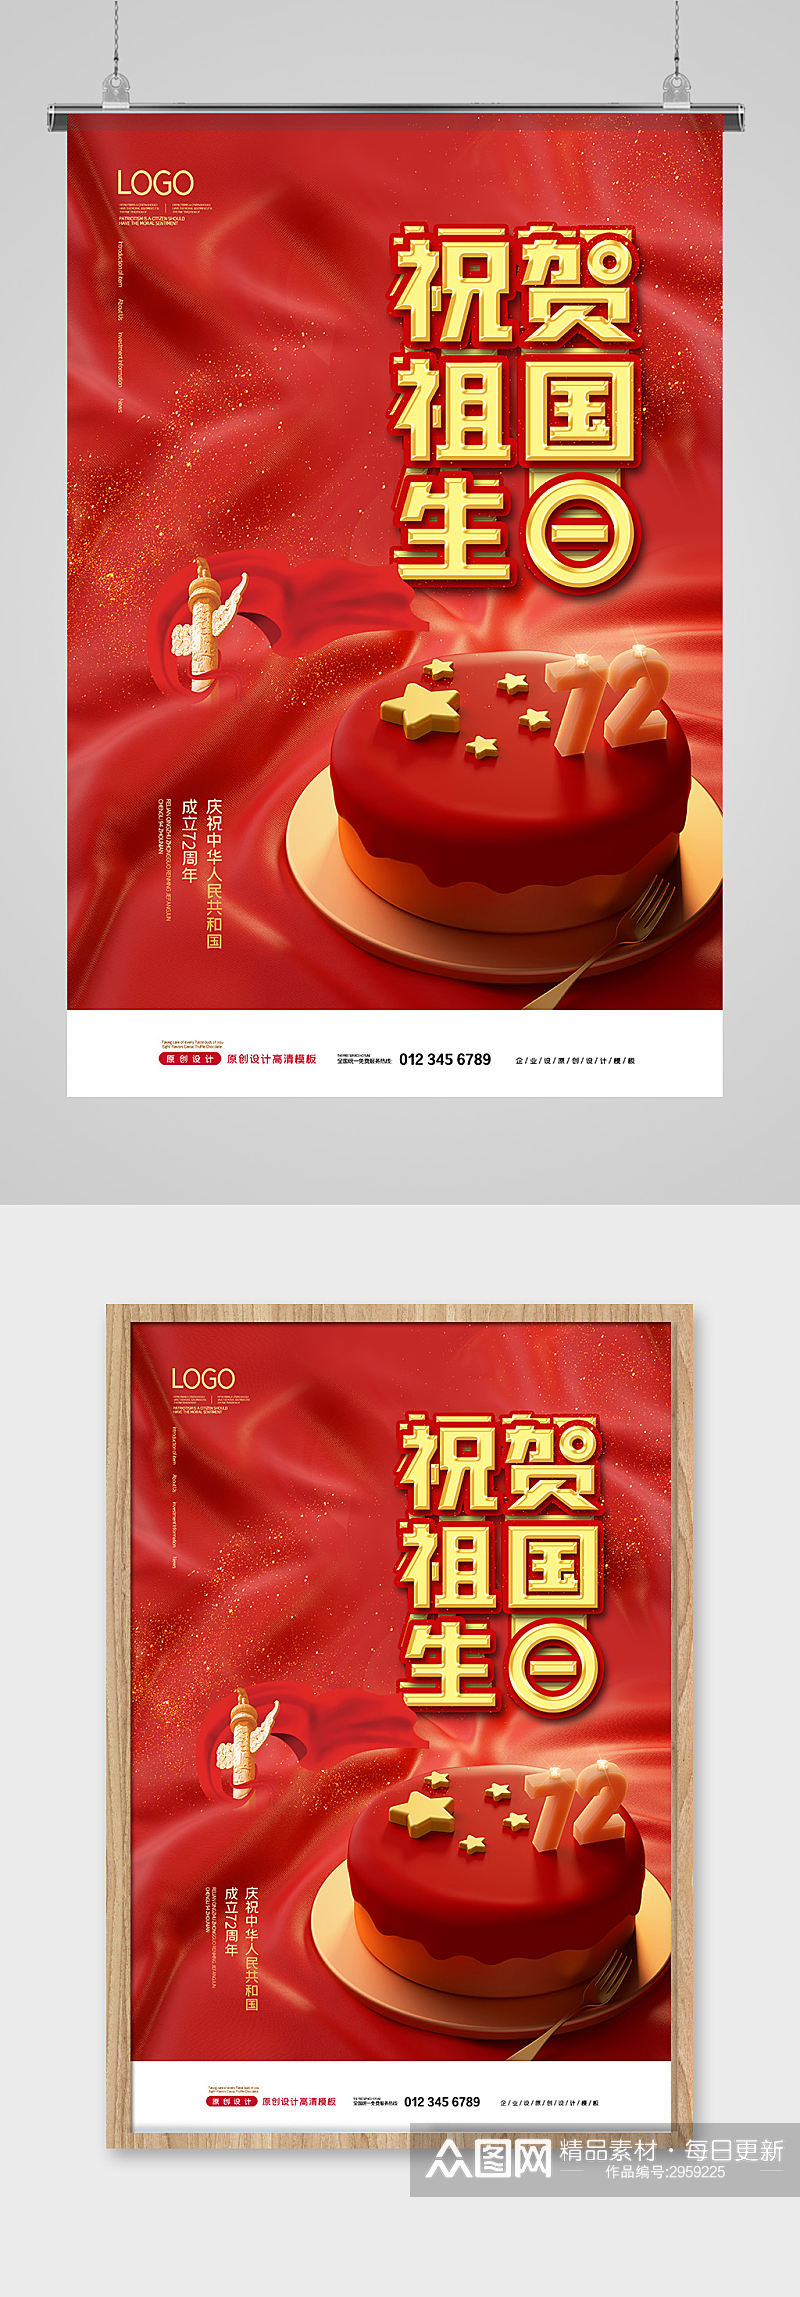 红色祝贺祖国生日国庆节海报设计素材